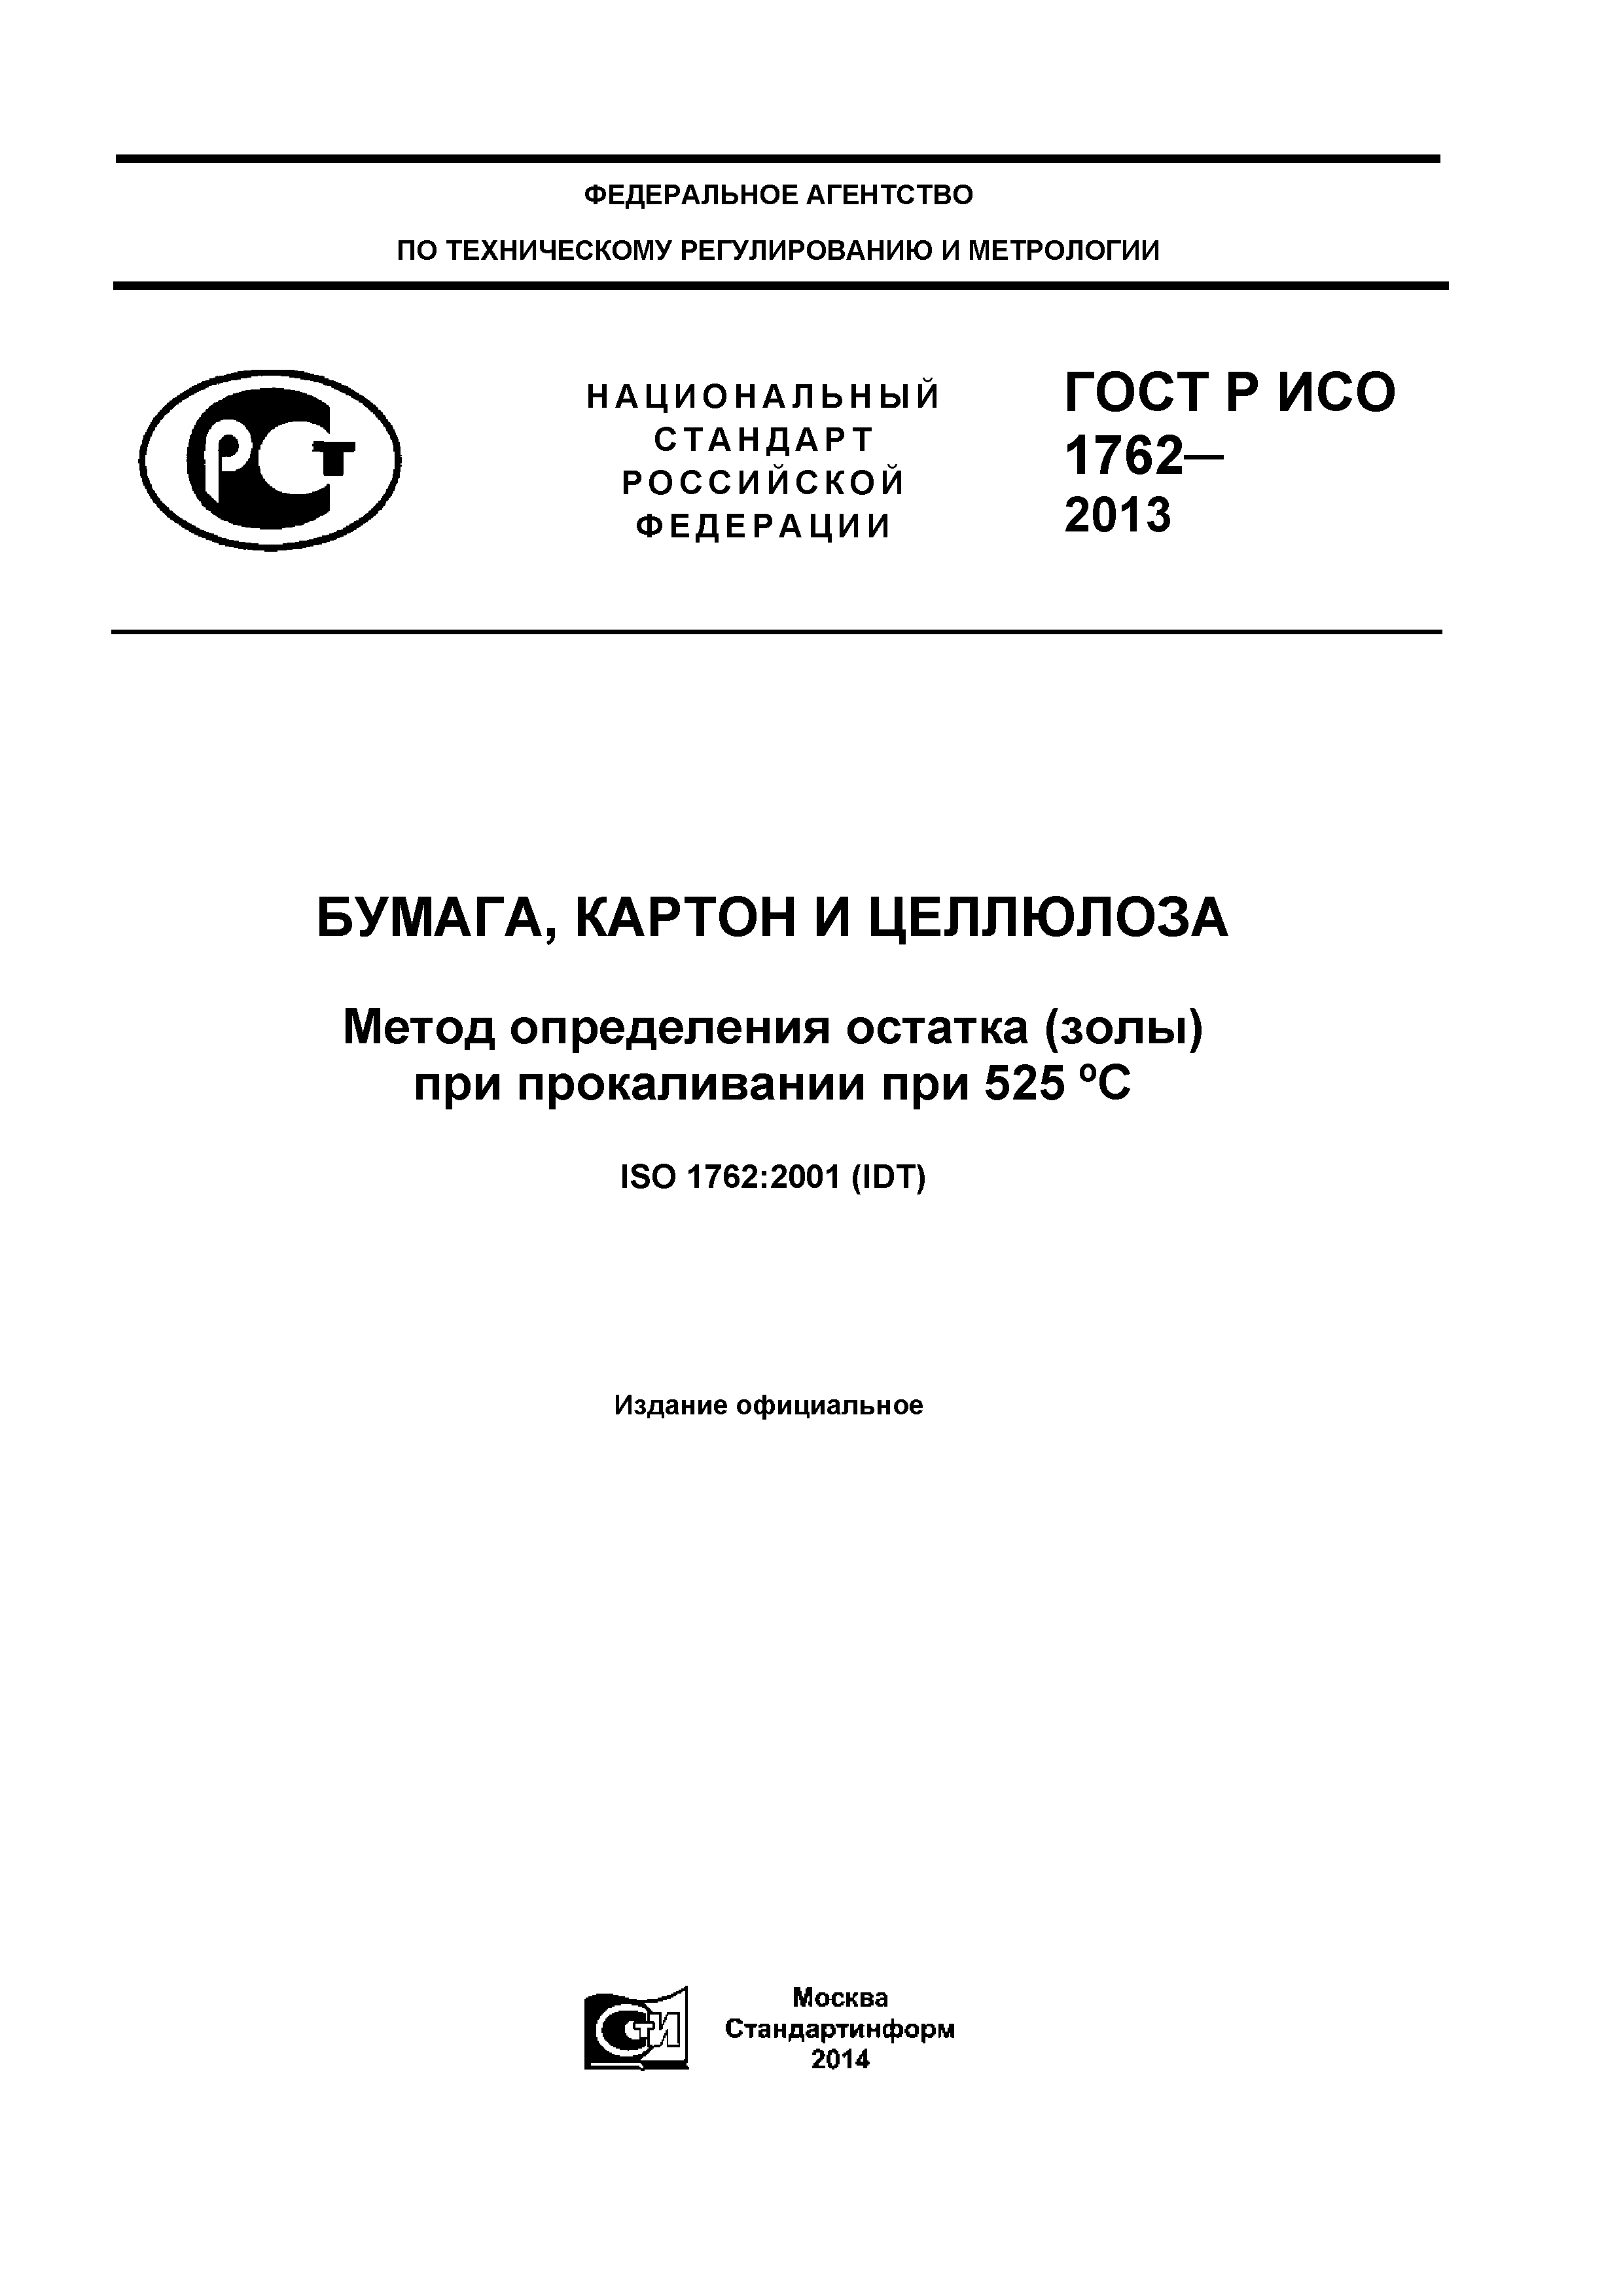 ГОСТ Р ИСО 1762-2013